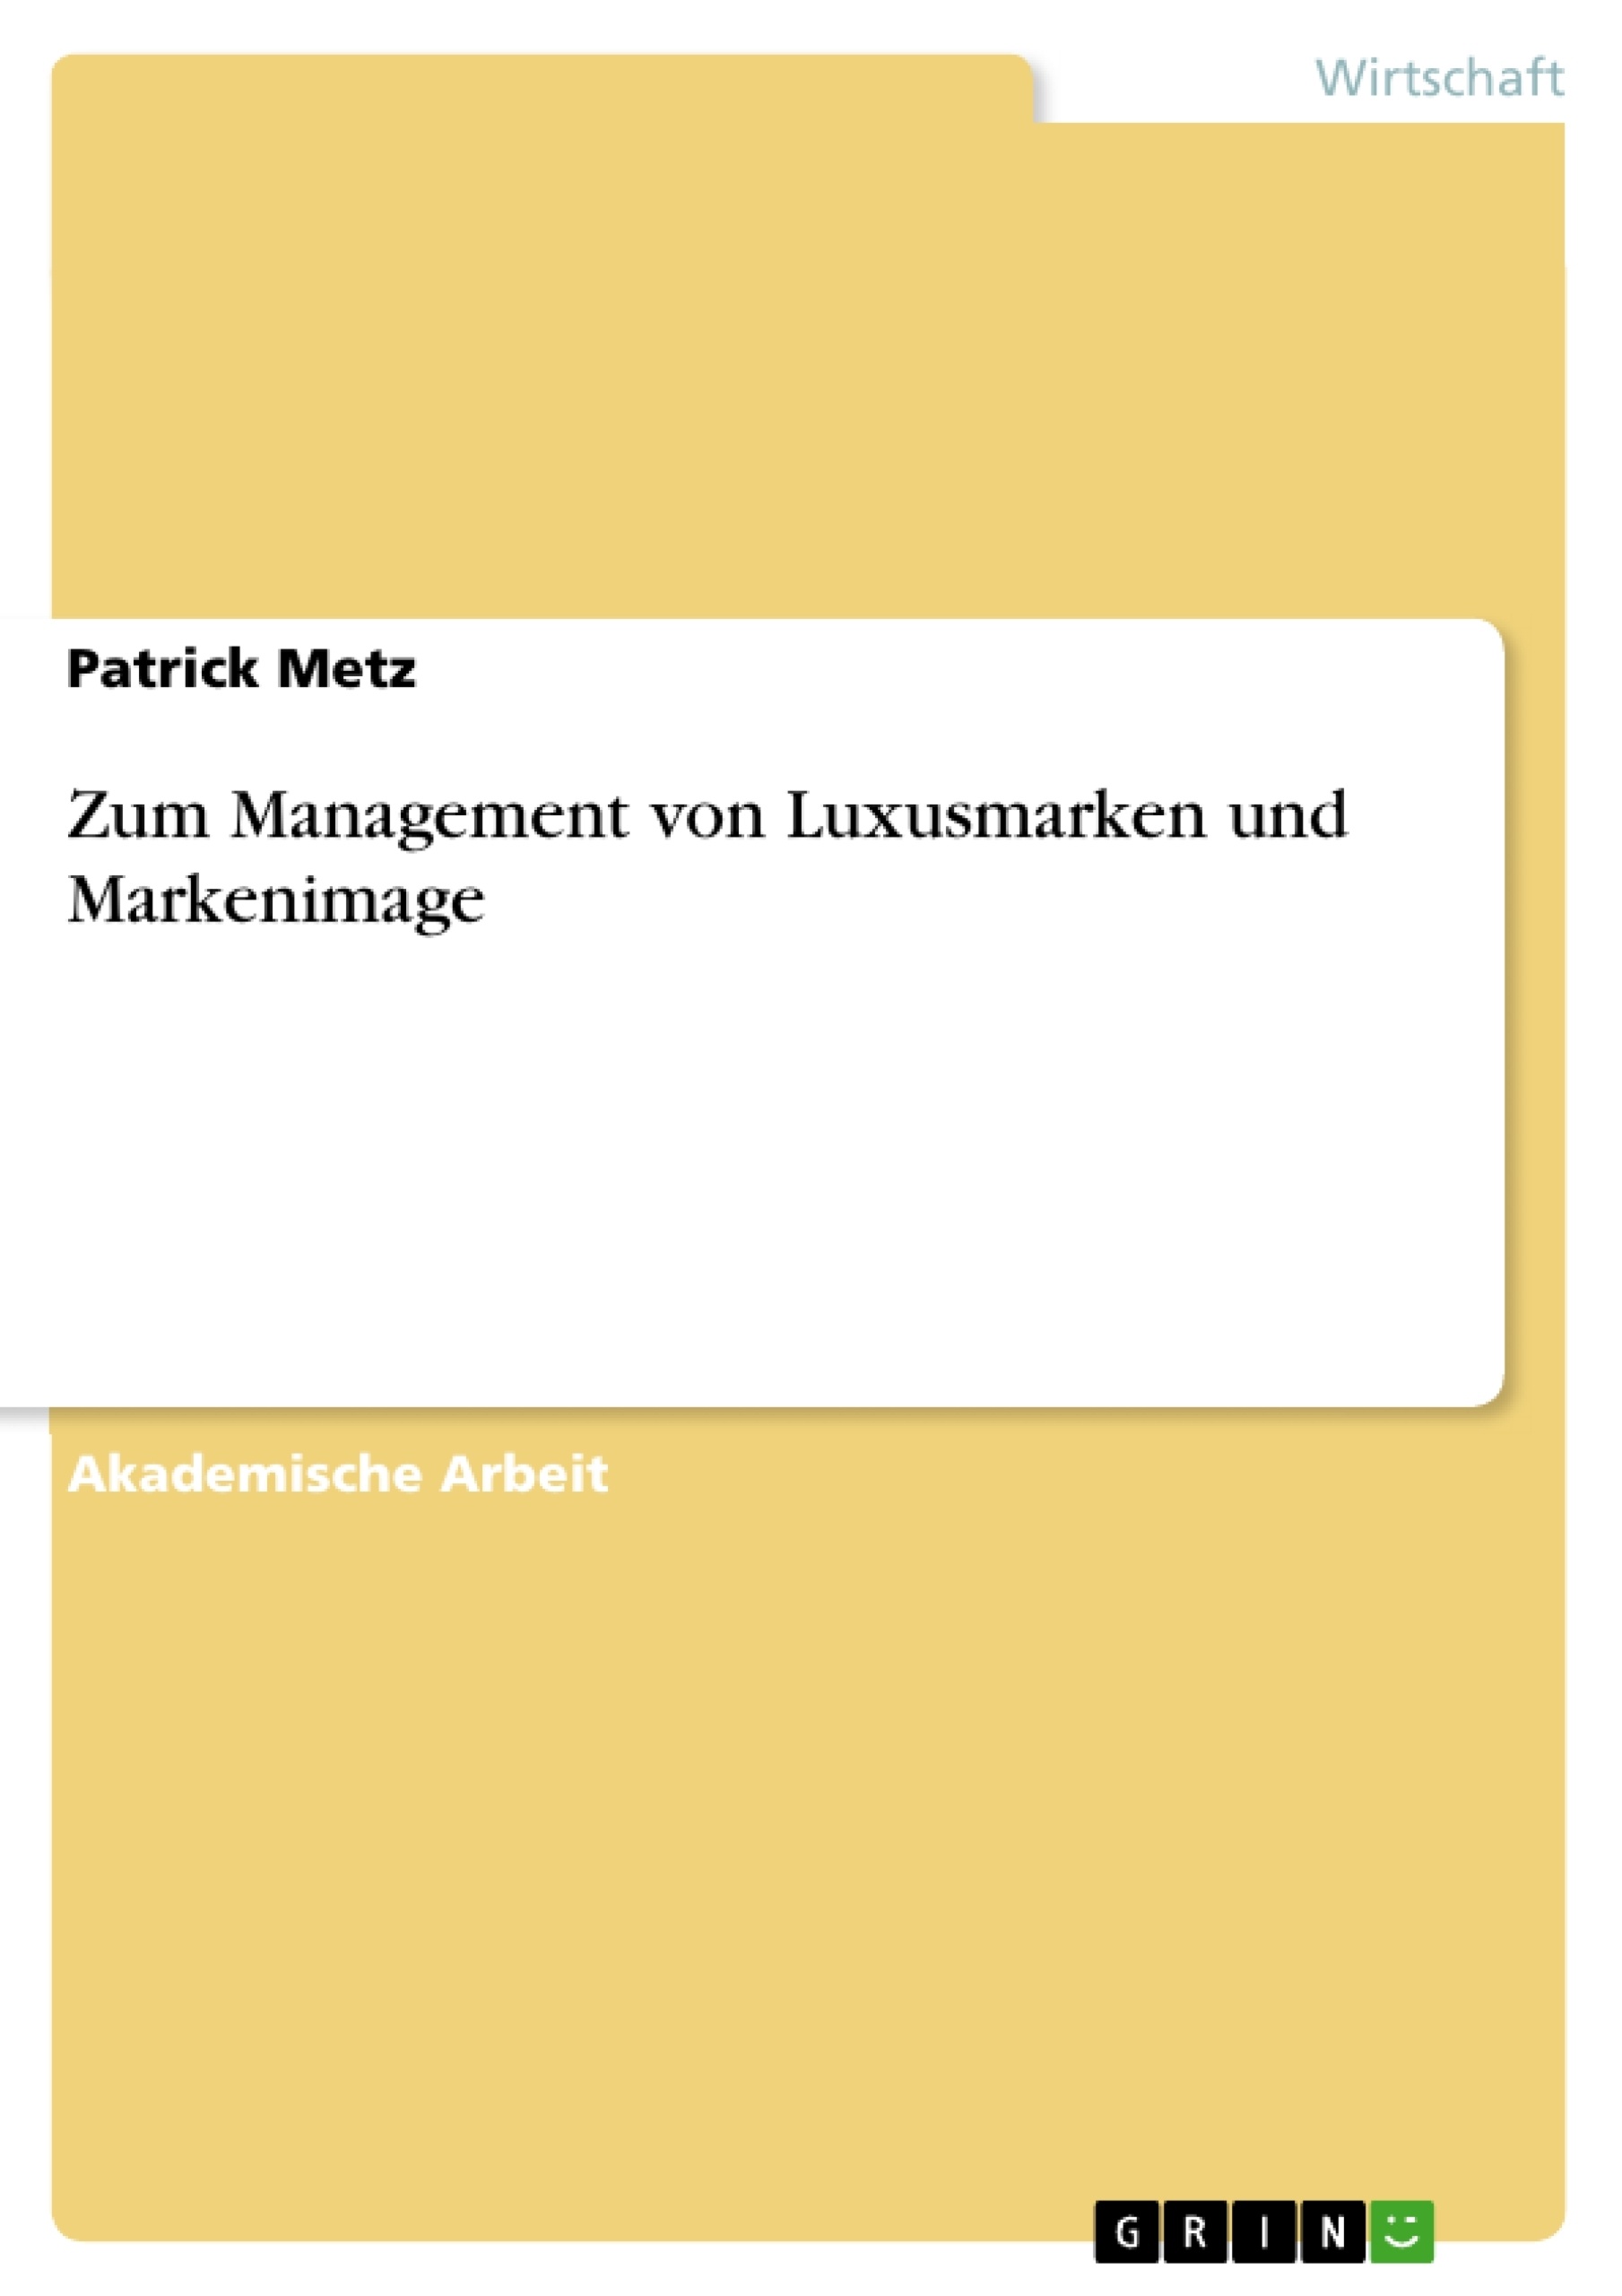 Título: Zum Management von Luxusmarken und Markenimage